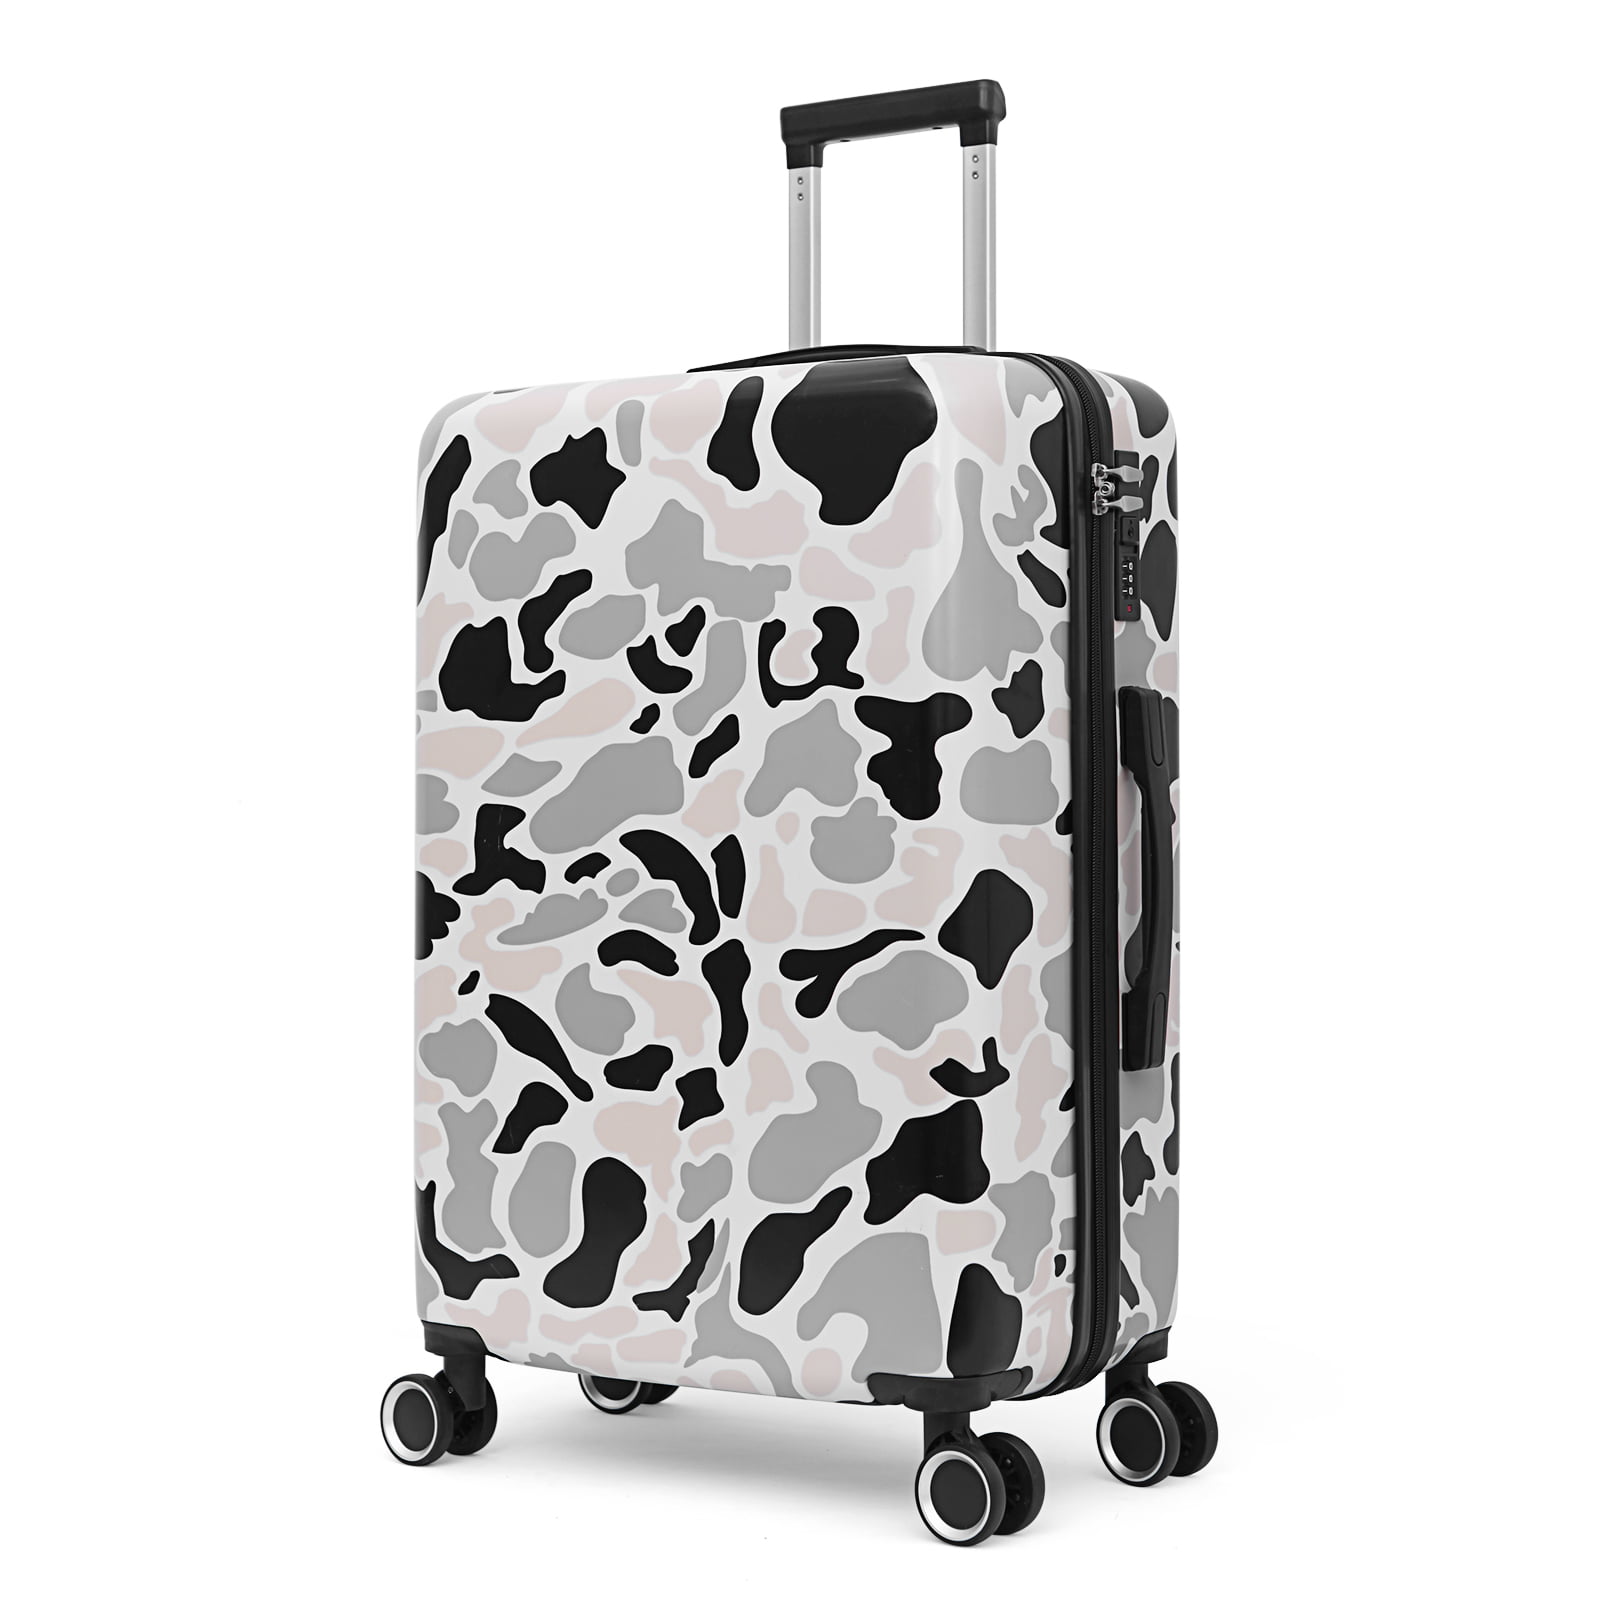 Boundless Spinner Hardside Luggage Set - Silver - Walmart.com